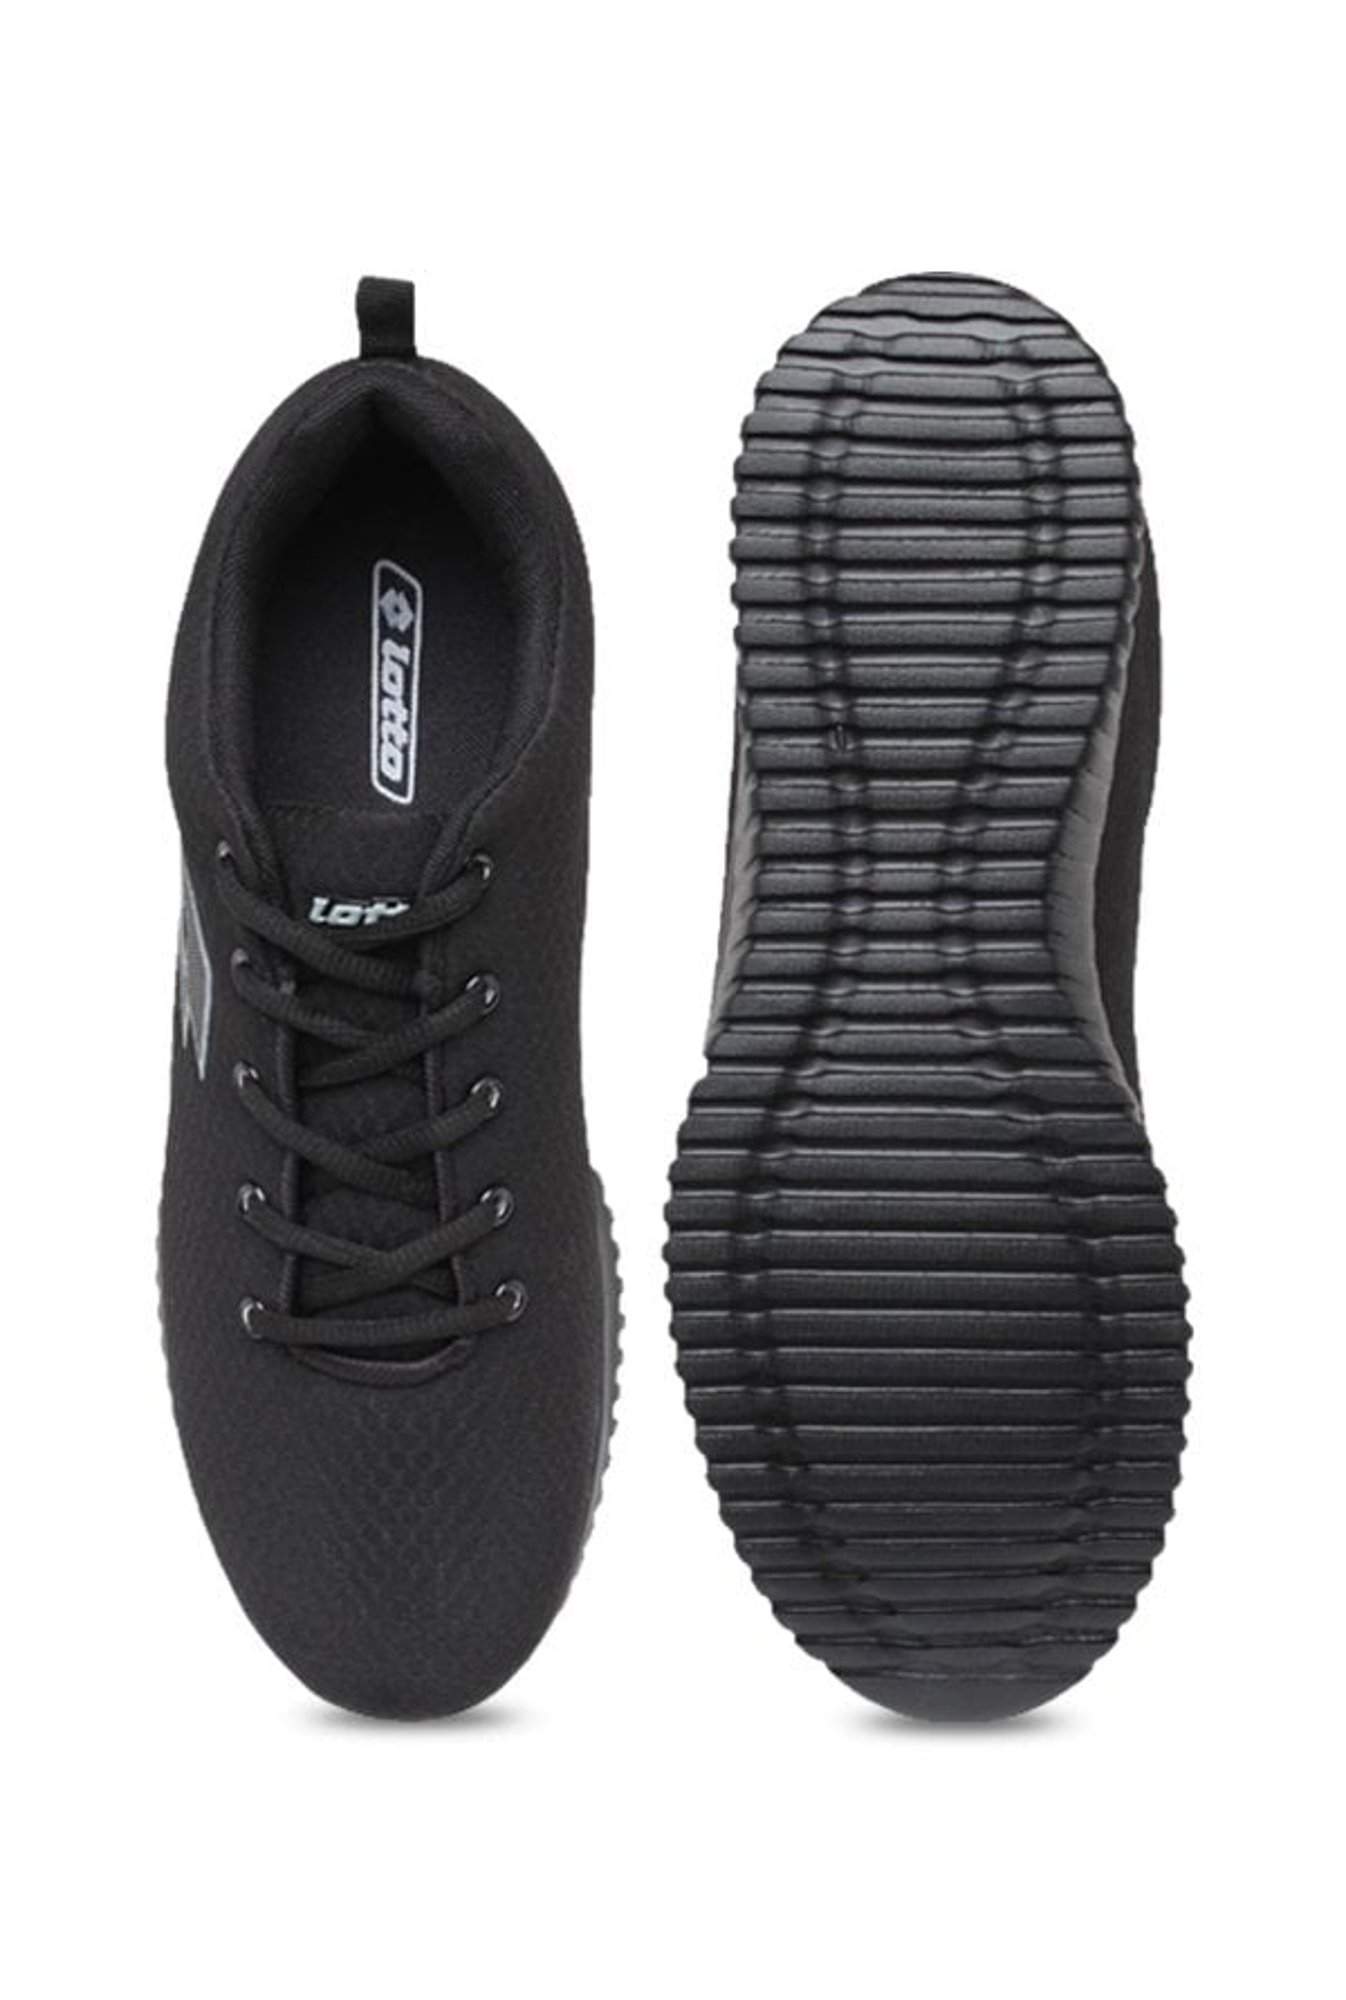 lotto vertigo black shoes